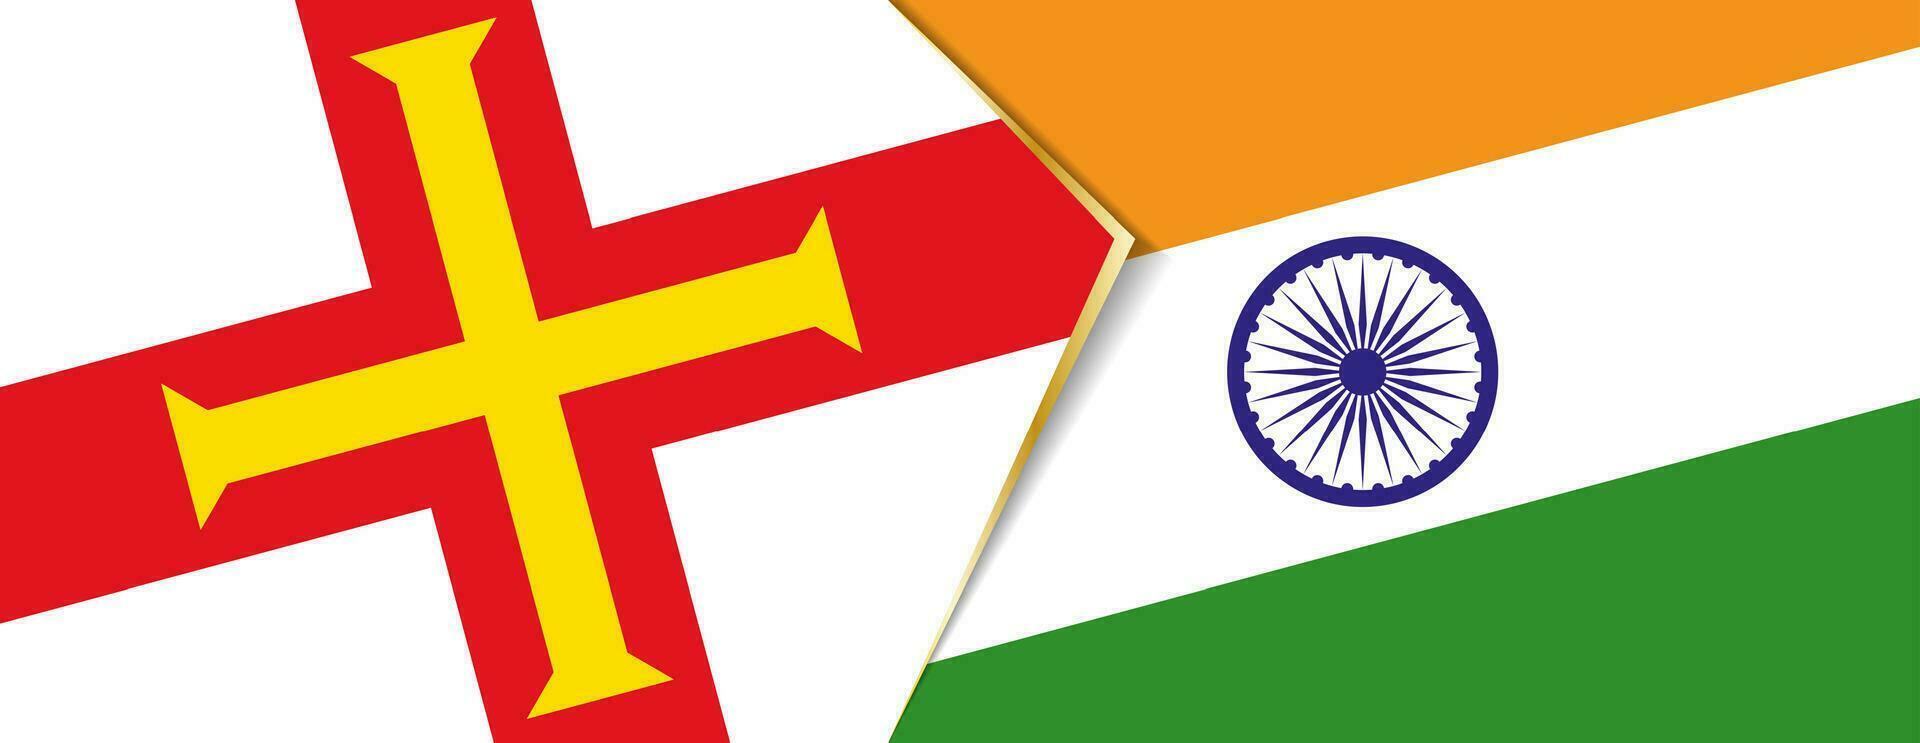 Guernesey et Inde drapeaux, deux vecteur drapeaux.